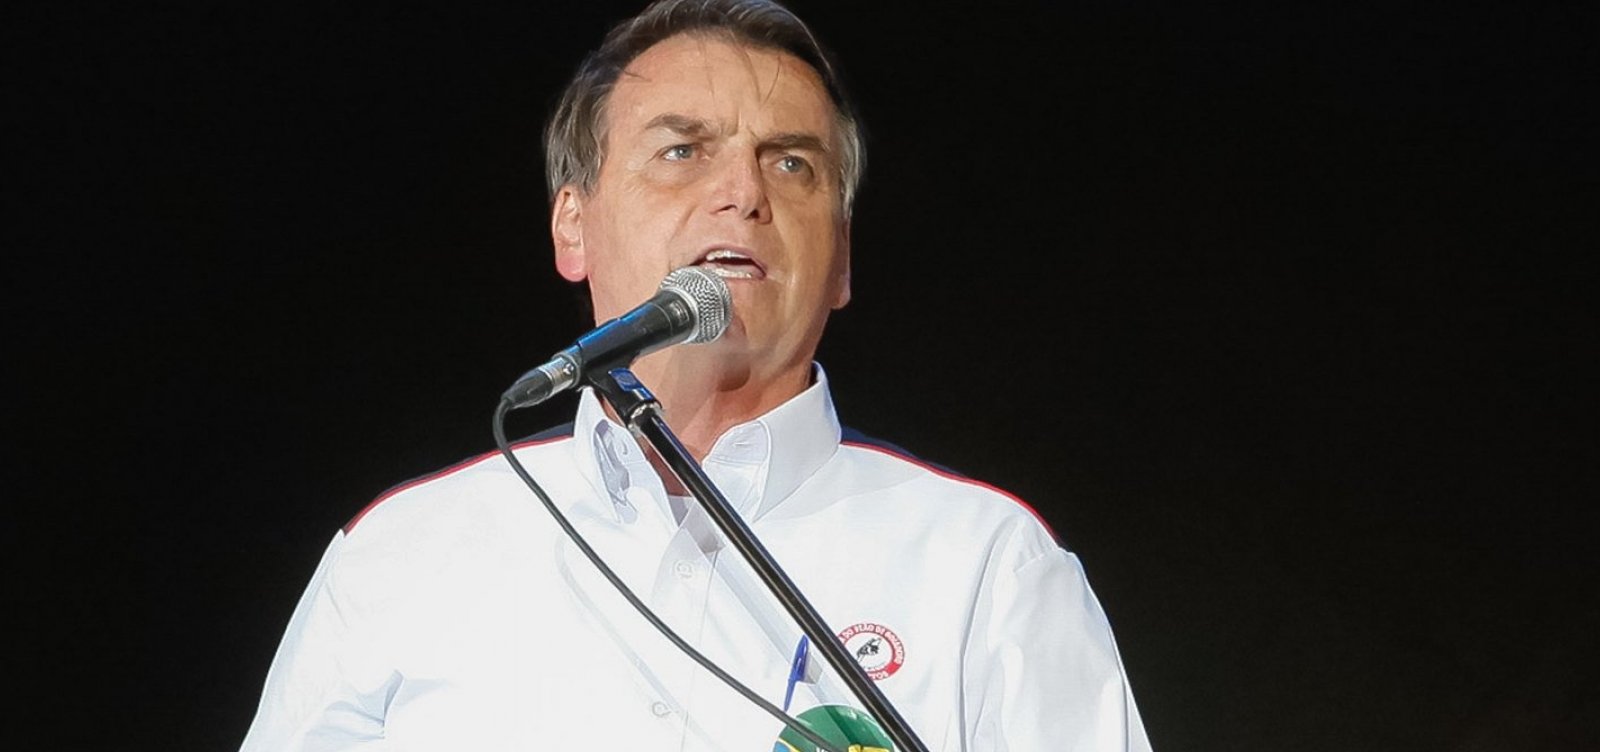 Indicações ao novo Coaf ficarão com presidente do BC, diz Bolsonaro